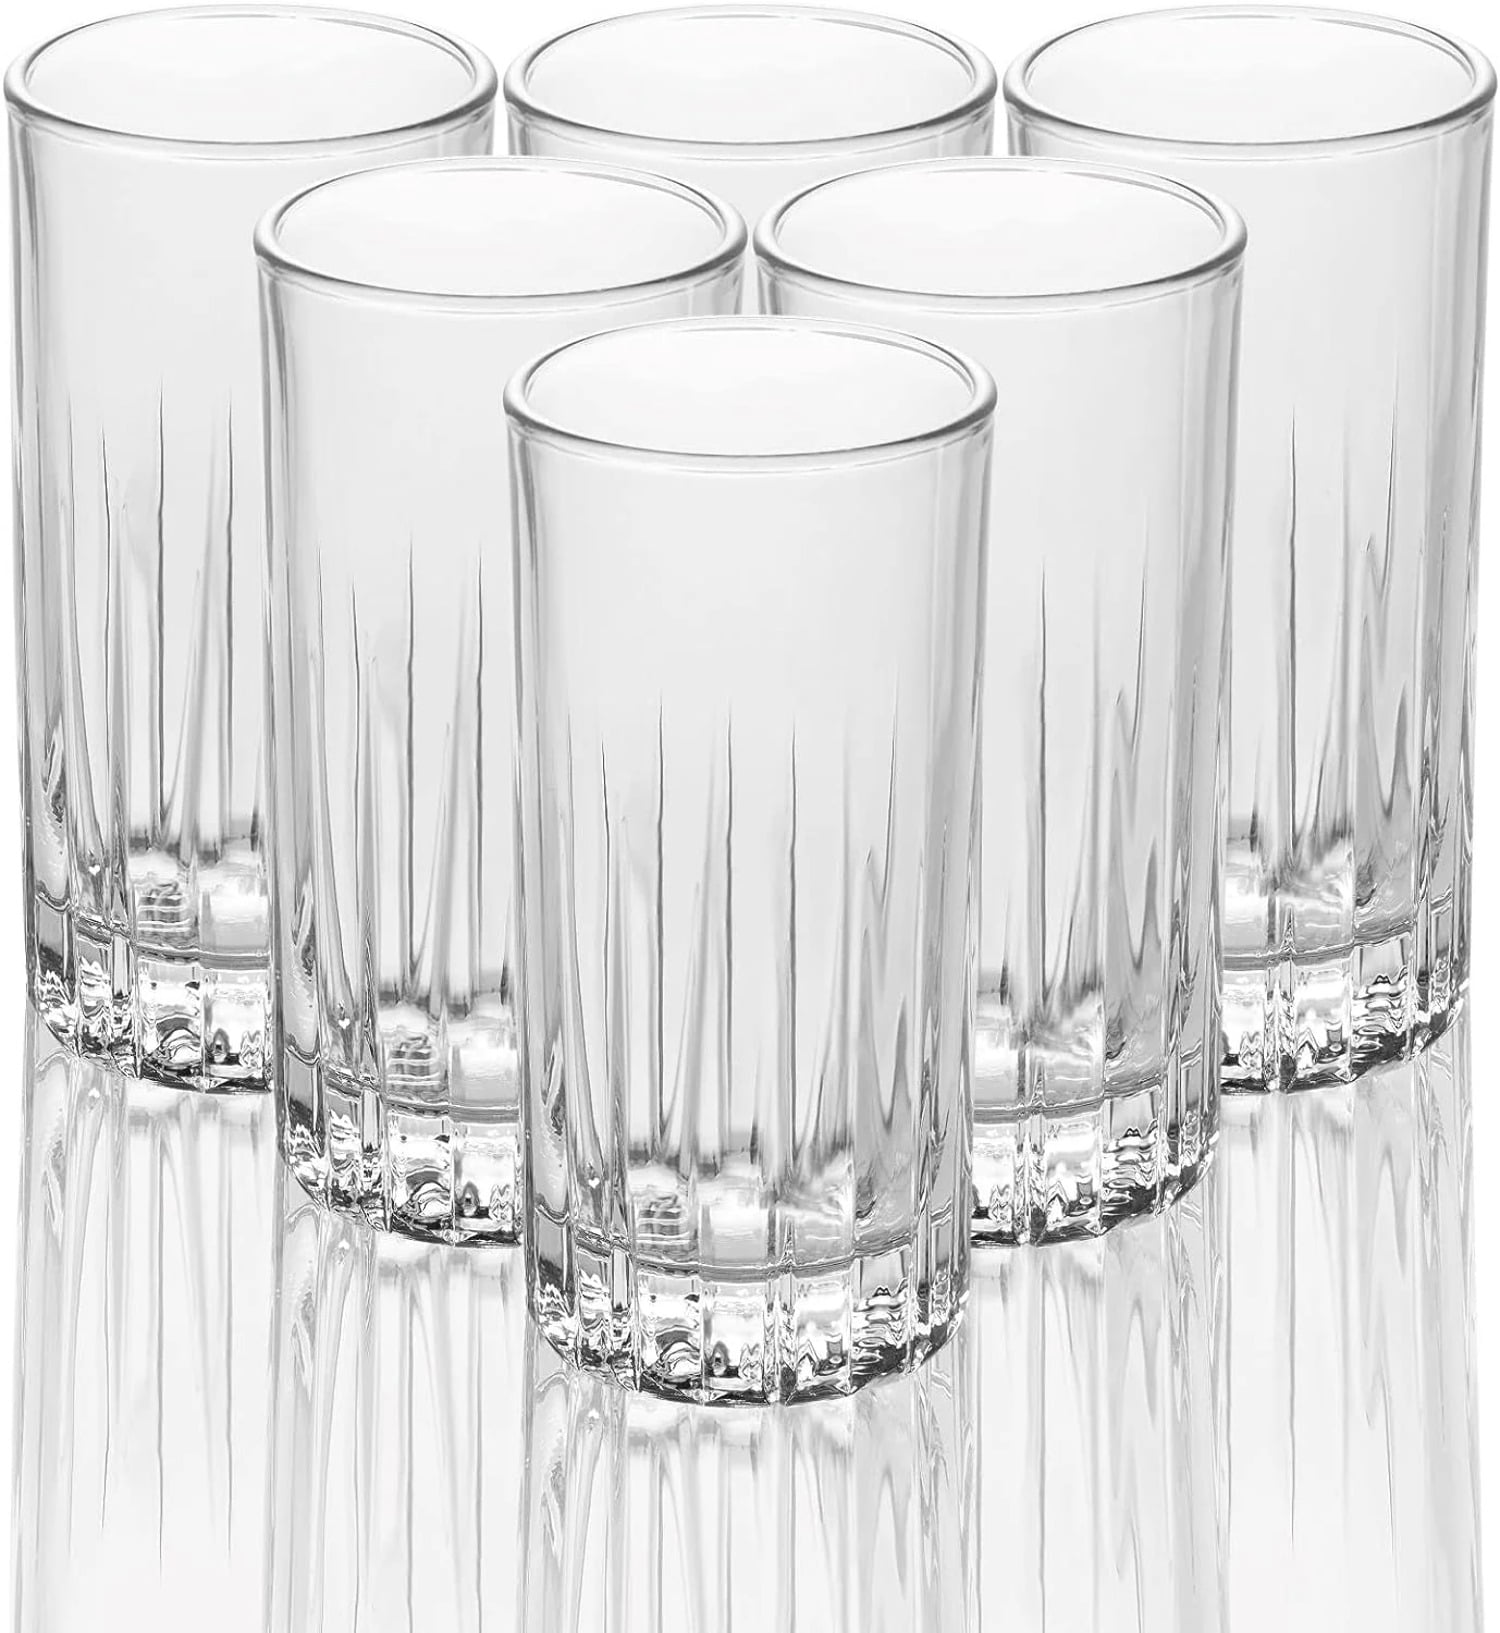 LEMONSODA Tom Collins Glasses Set of 6 (Traze Tom Collins) Crystal Cut  Collins Glass Holds 350 ML/ 11.5 Oz Elegant Crystal Clear Glass Set